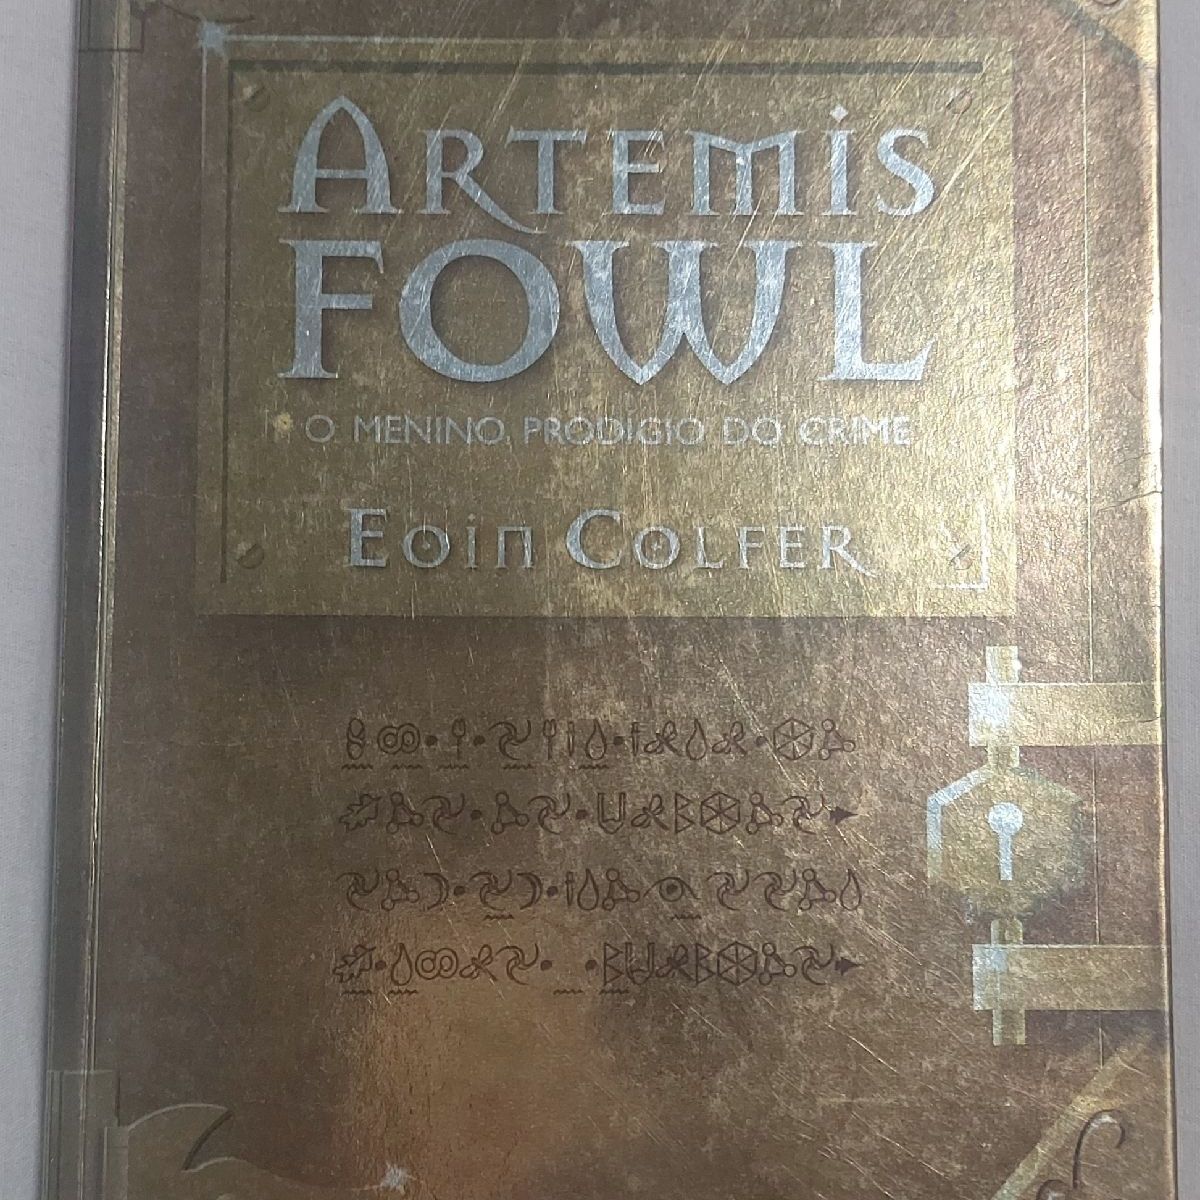 Livro Artemis Fowl - O Menino Prodígio do Crime - de Eoin Colfer. Editora  Record, Livro Editora Record Usado 62788832